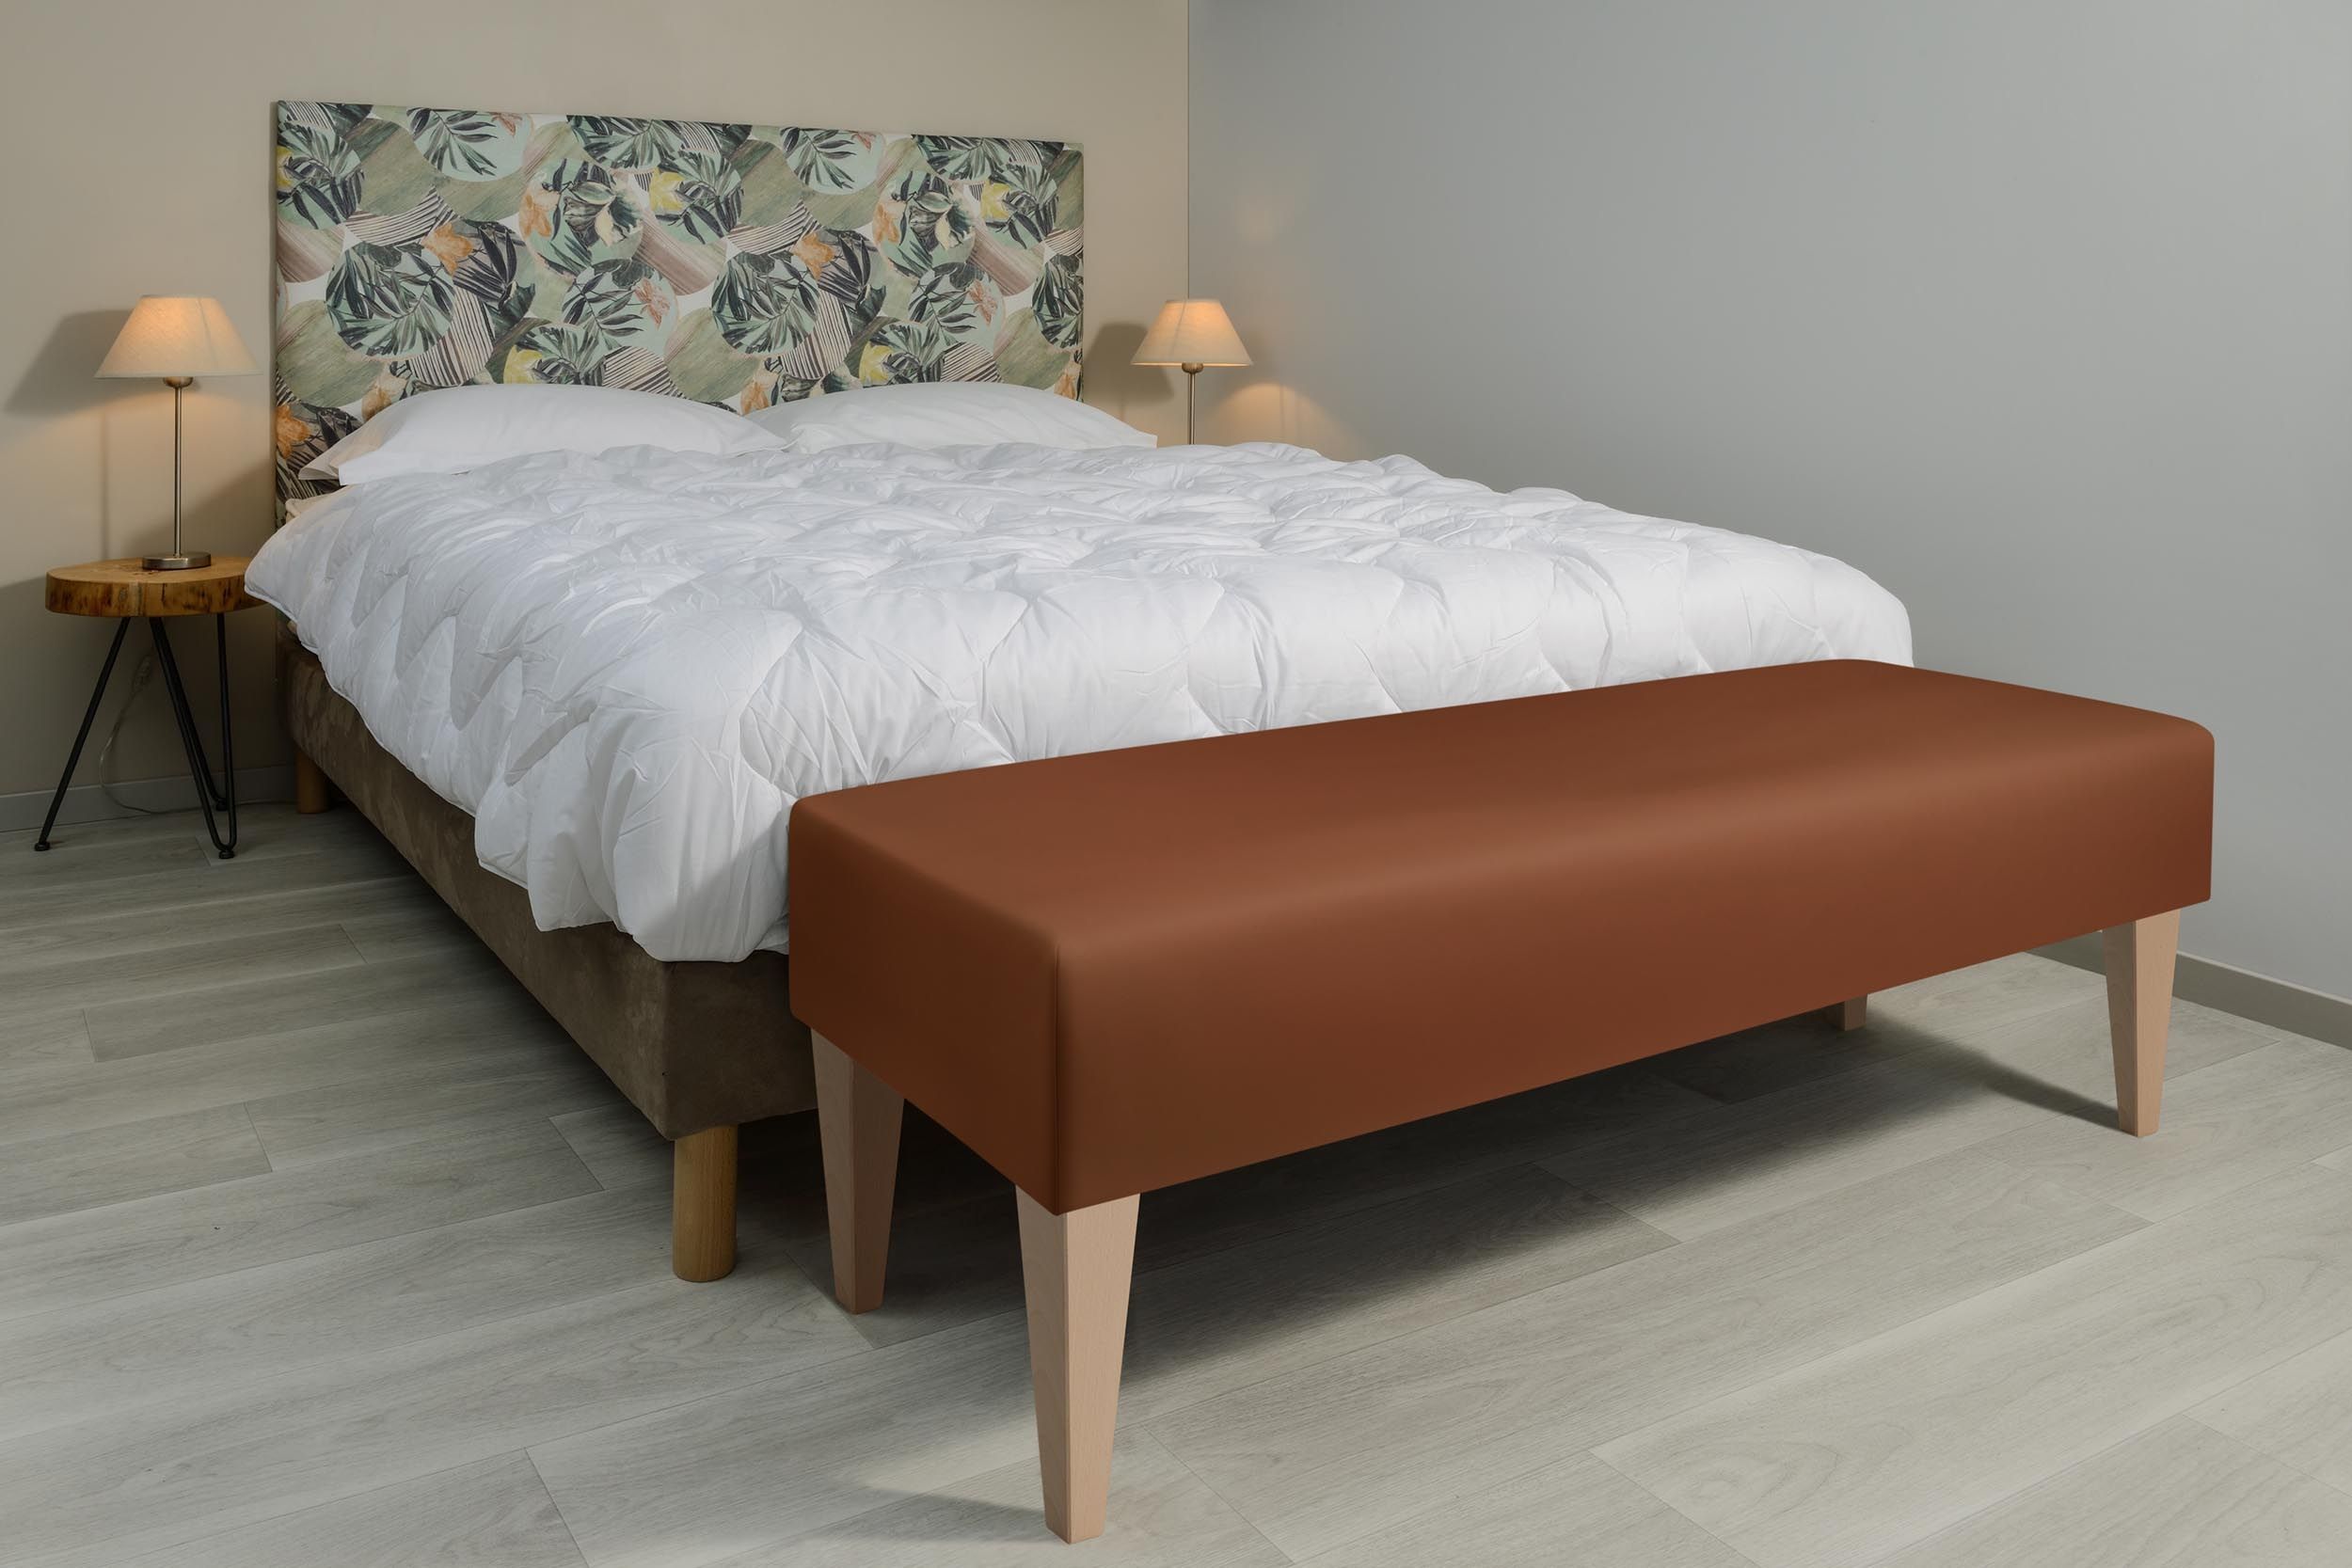 Banc pied de lit design - Simili cuir marron - Livraison offerte